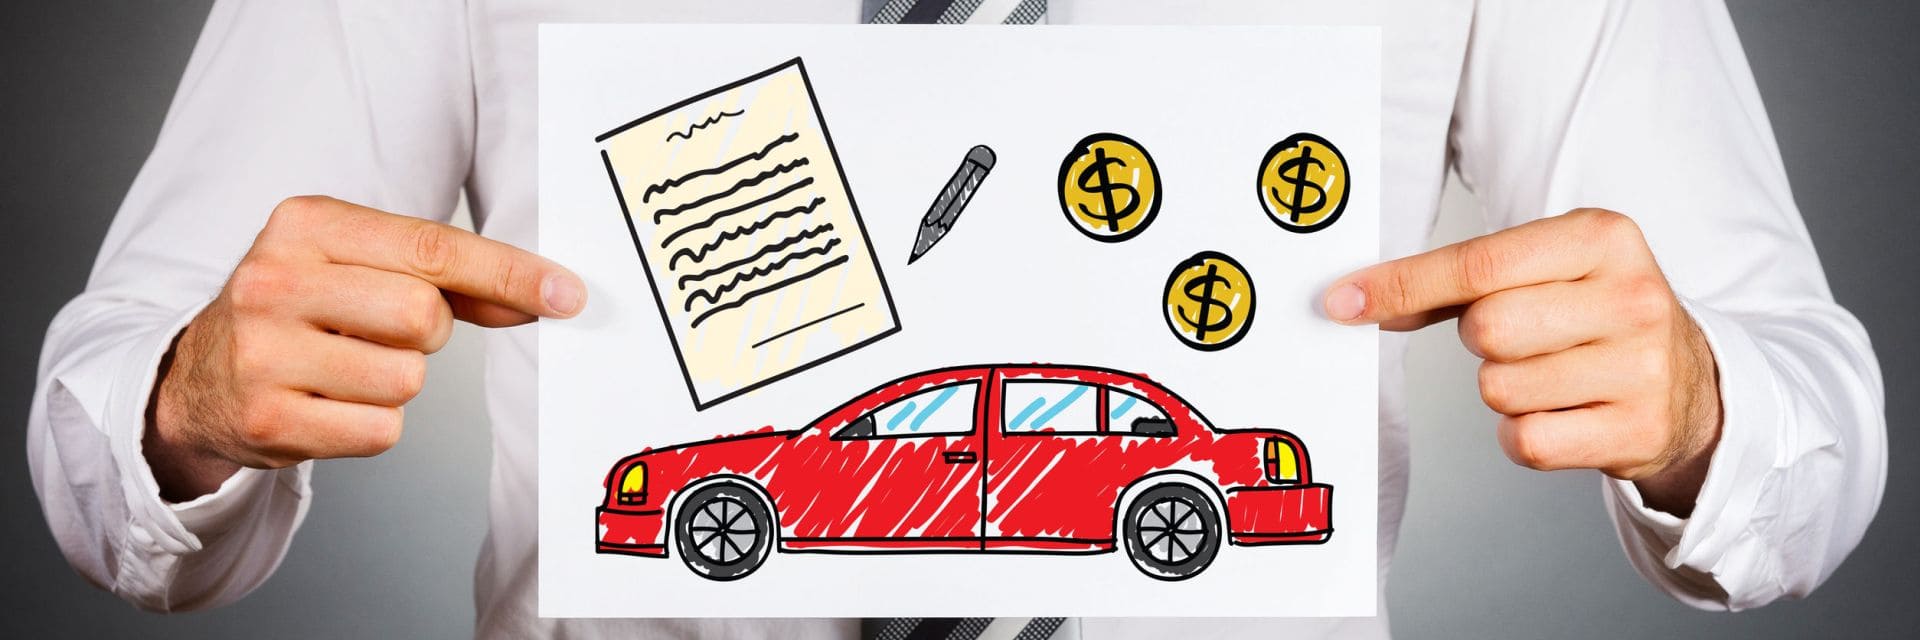 Как взять кредит на подержанный автомобиль: советы и рекомендации